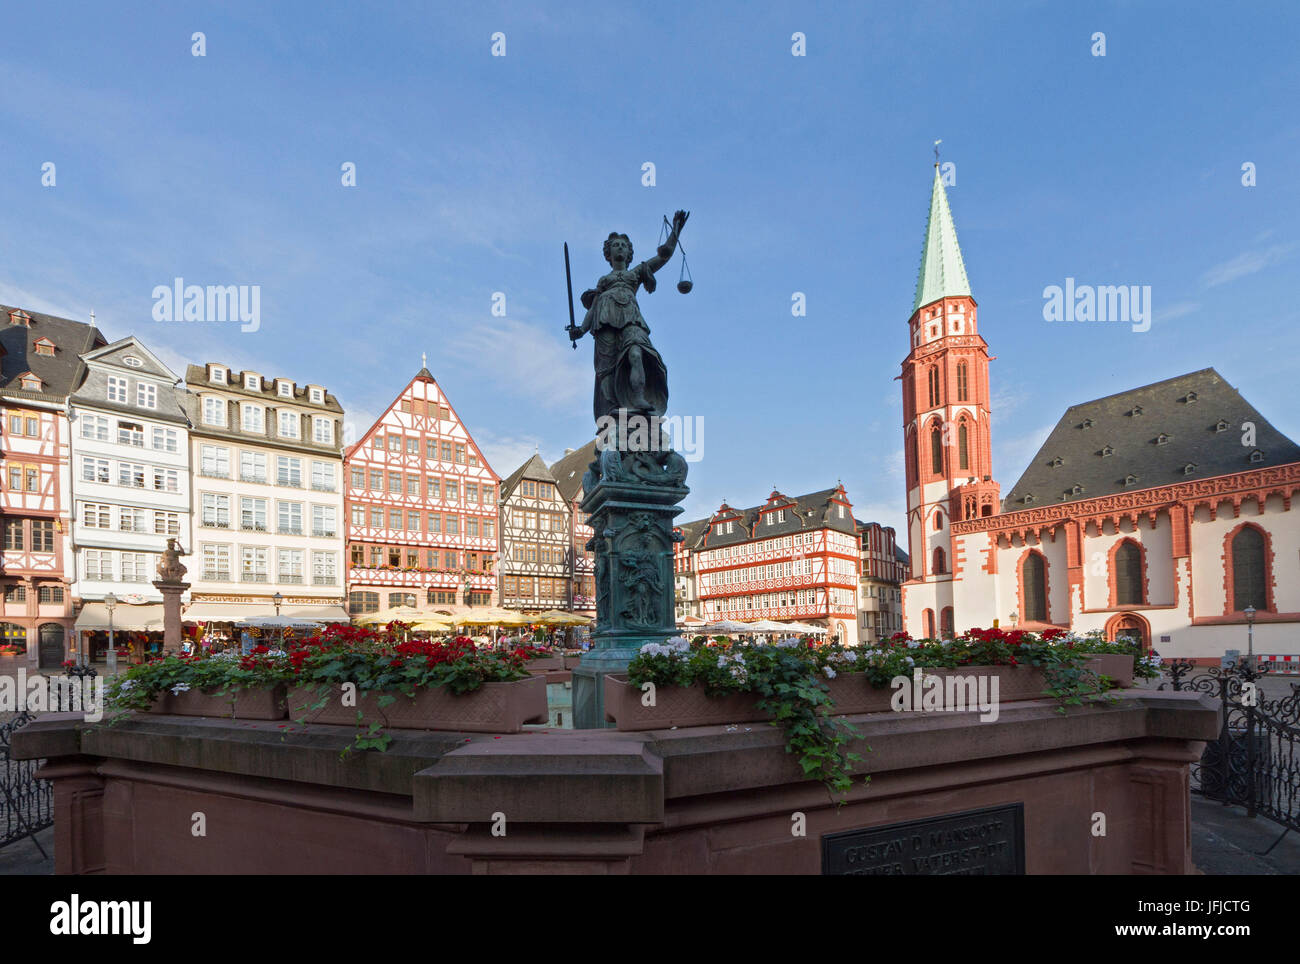 La Romerberg square avec la statue de la Justice dans le centre et l'église de San Nicola, Francfort, Allemagne Banque D'Images